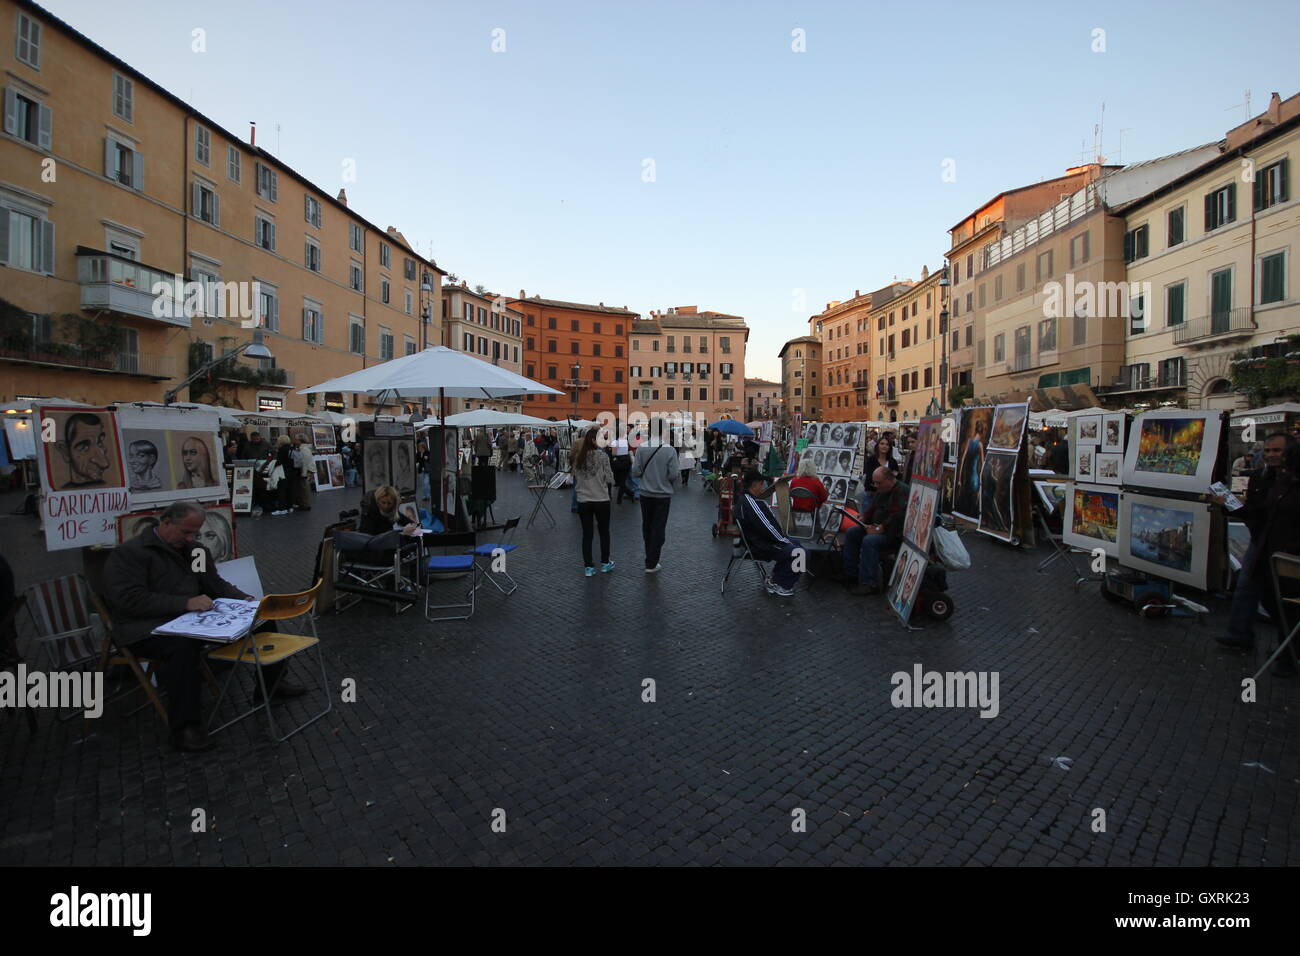 Roma, Rome, Rome, tha célèbre Piazza Navona, prise de vue au grand angle de la fascinante les étals du marché, l'Italie, Voyage, tourisme Banque D'Images